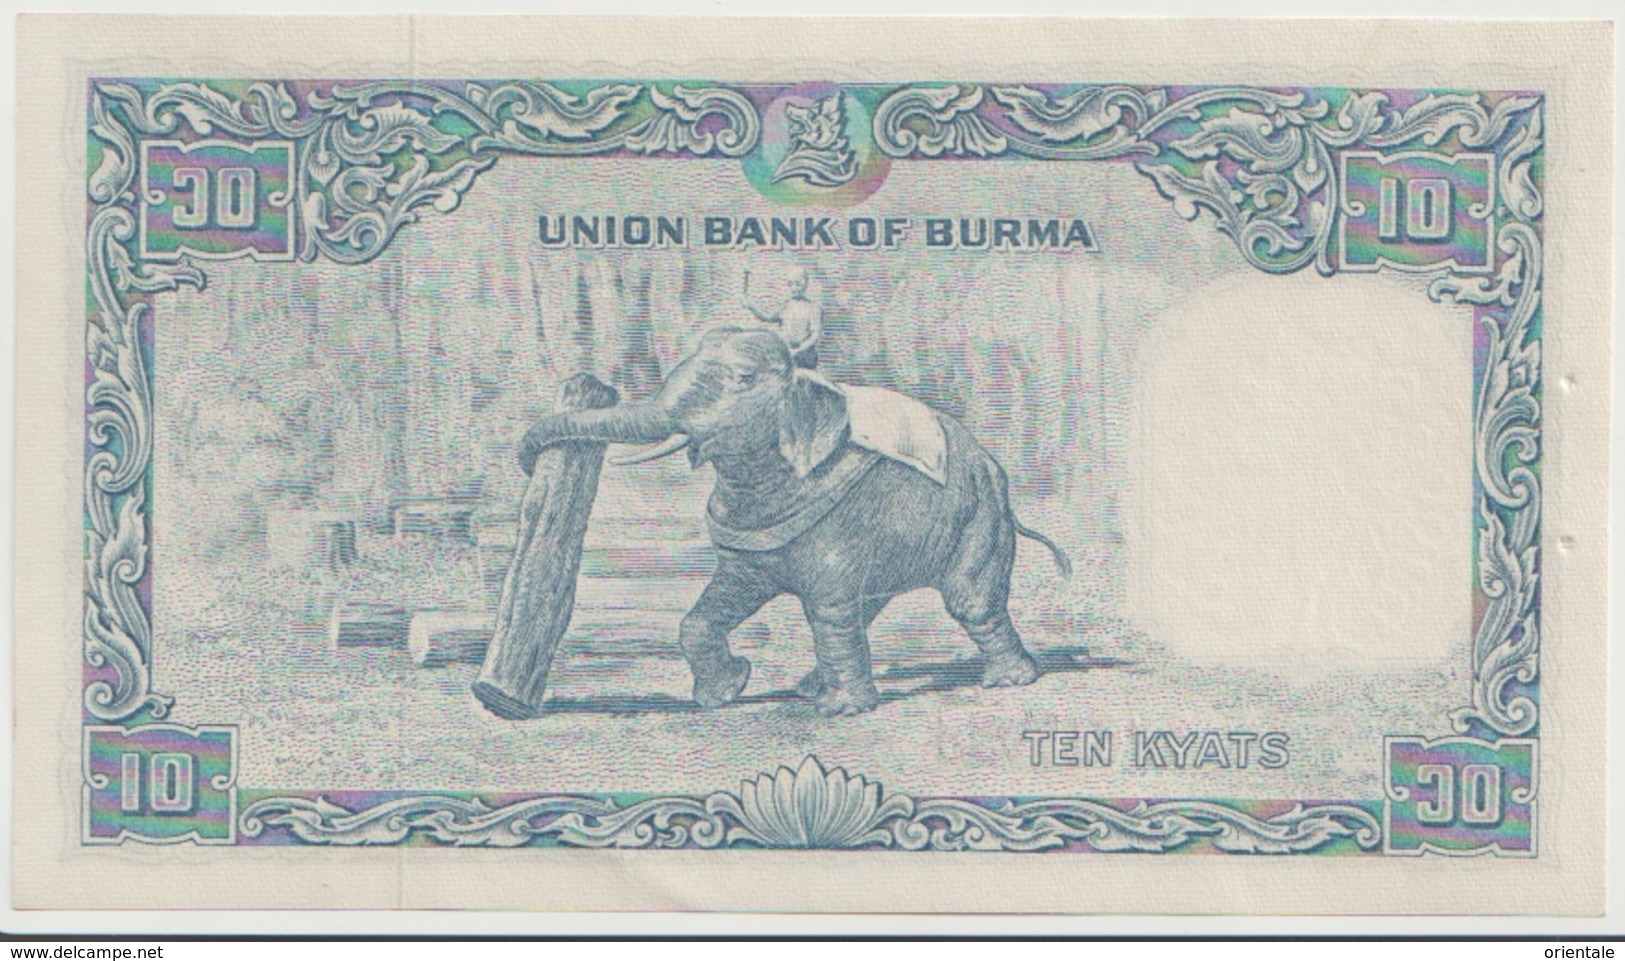 BURMA P. 44 10 R 1953 UNC - Myanmar